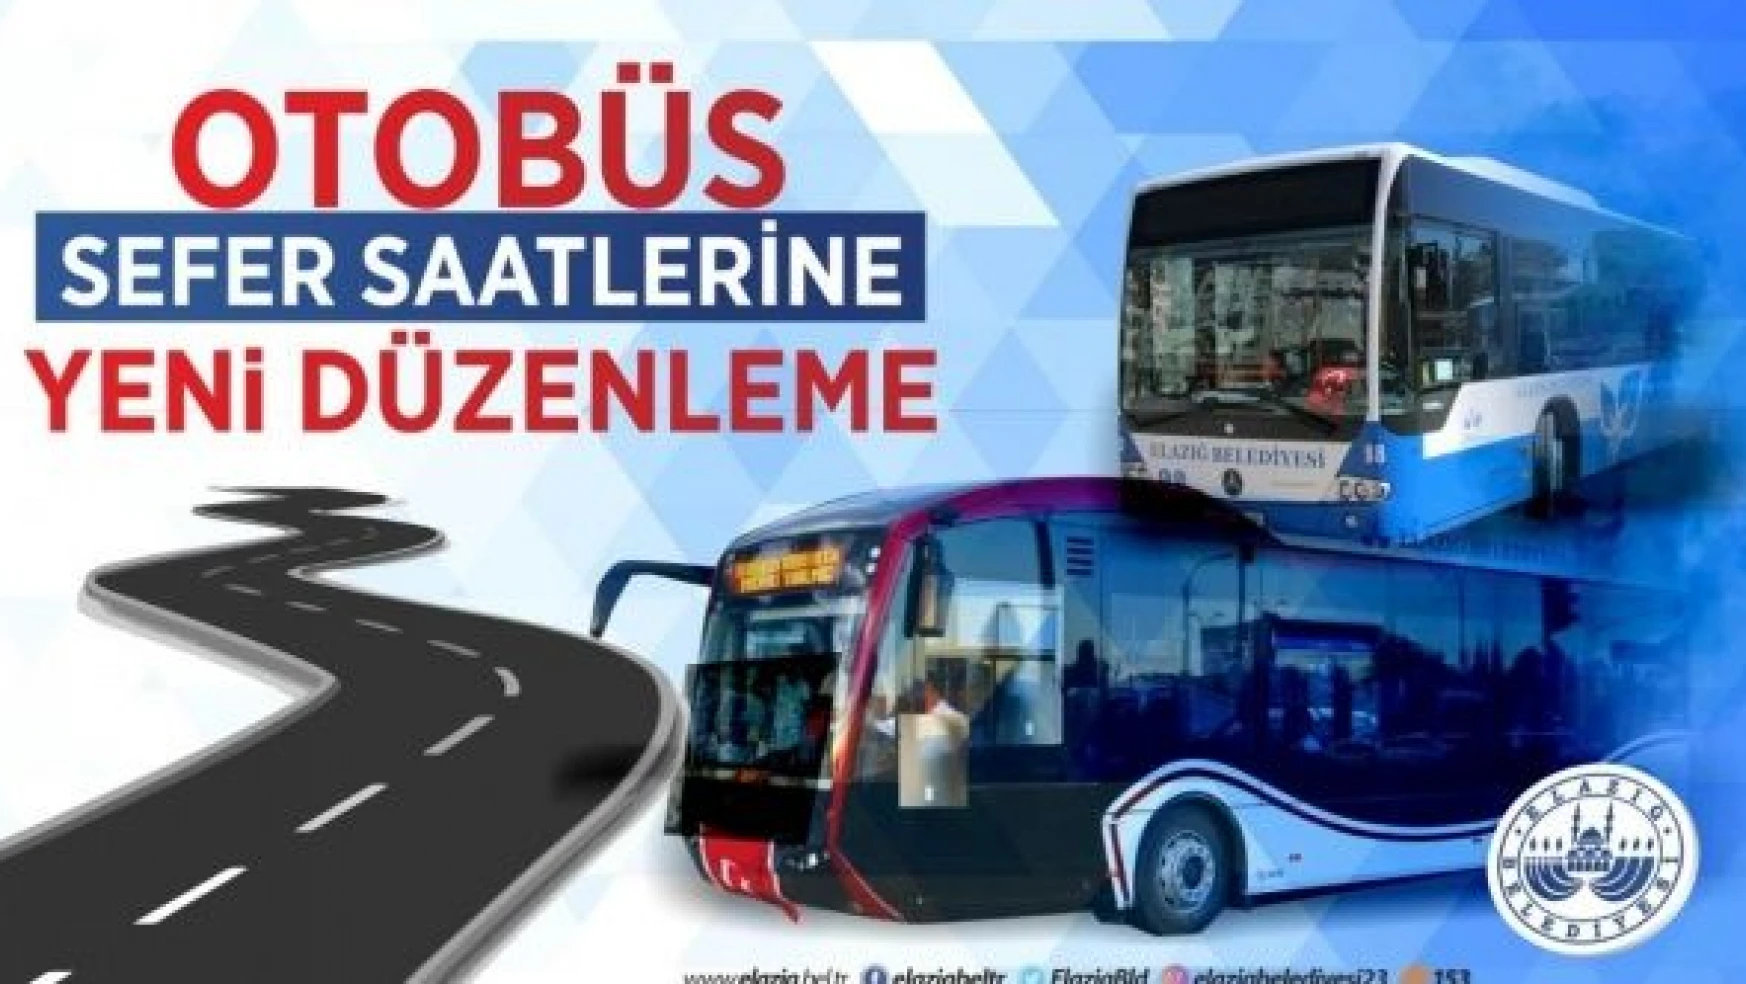 Elazığ Belediyesi otobüs sefer güzergahlarını düzenledi